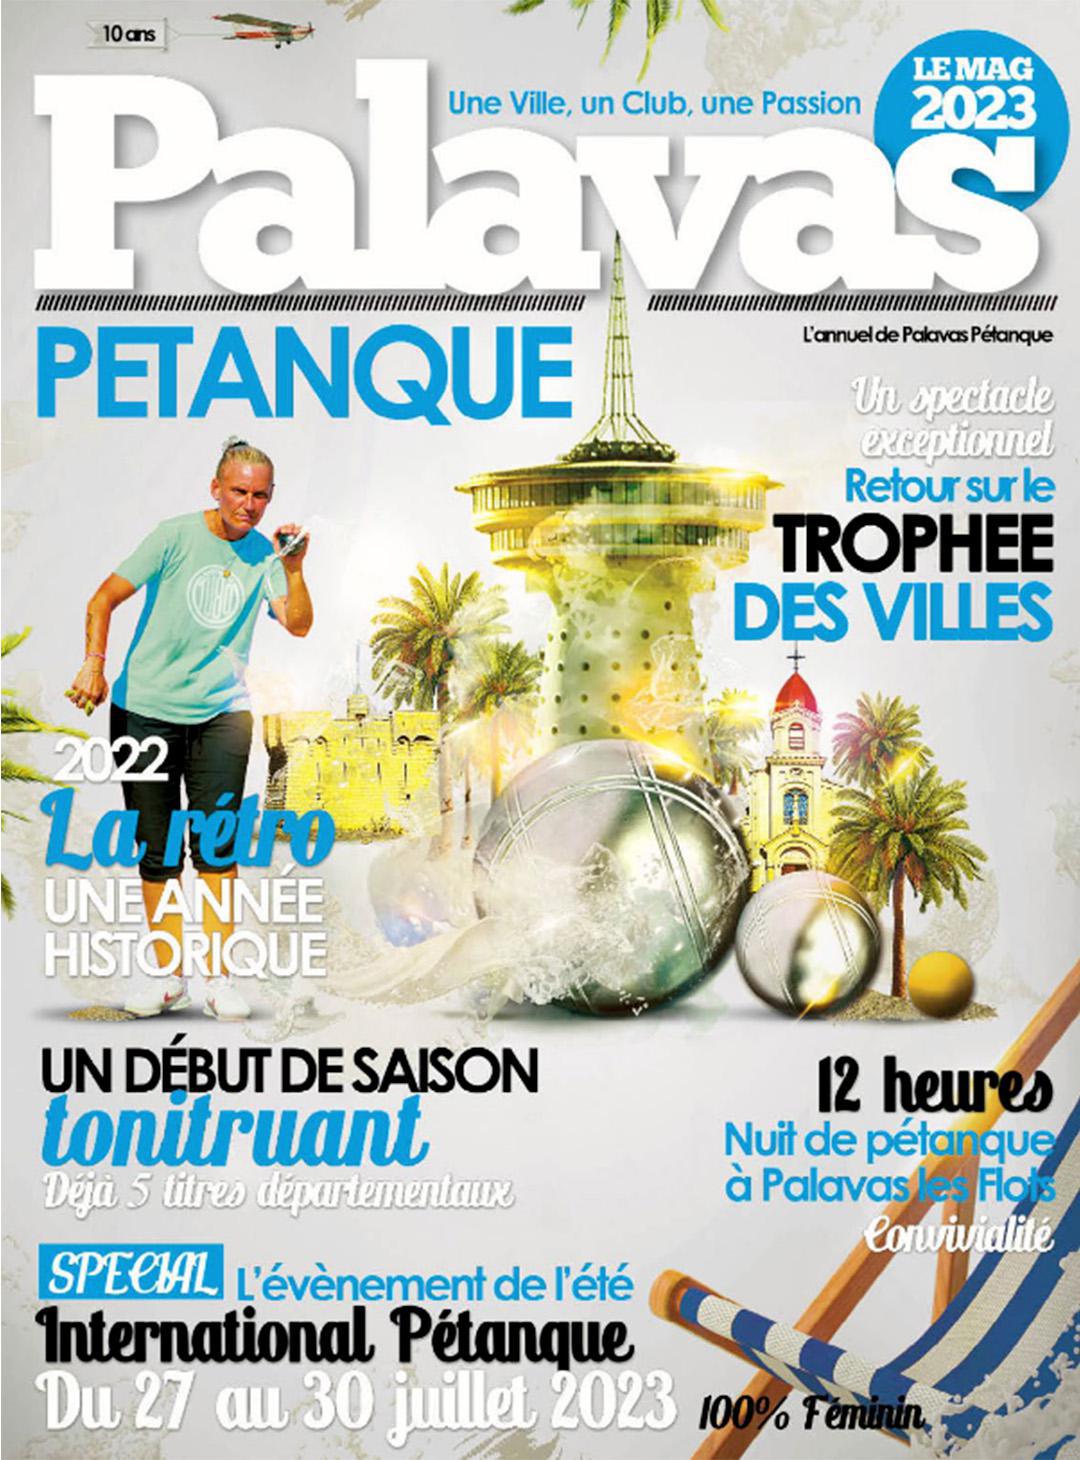 Palavas Pétanque, Le Mag 2023